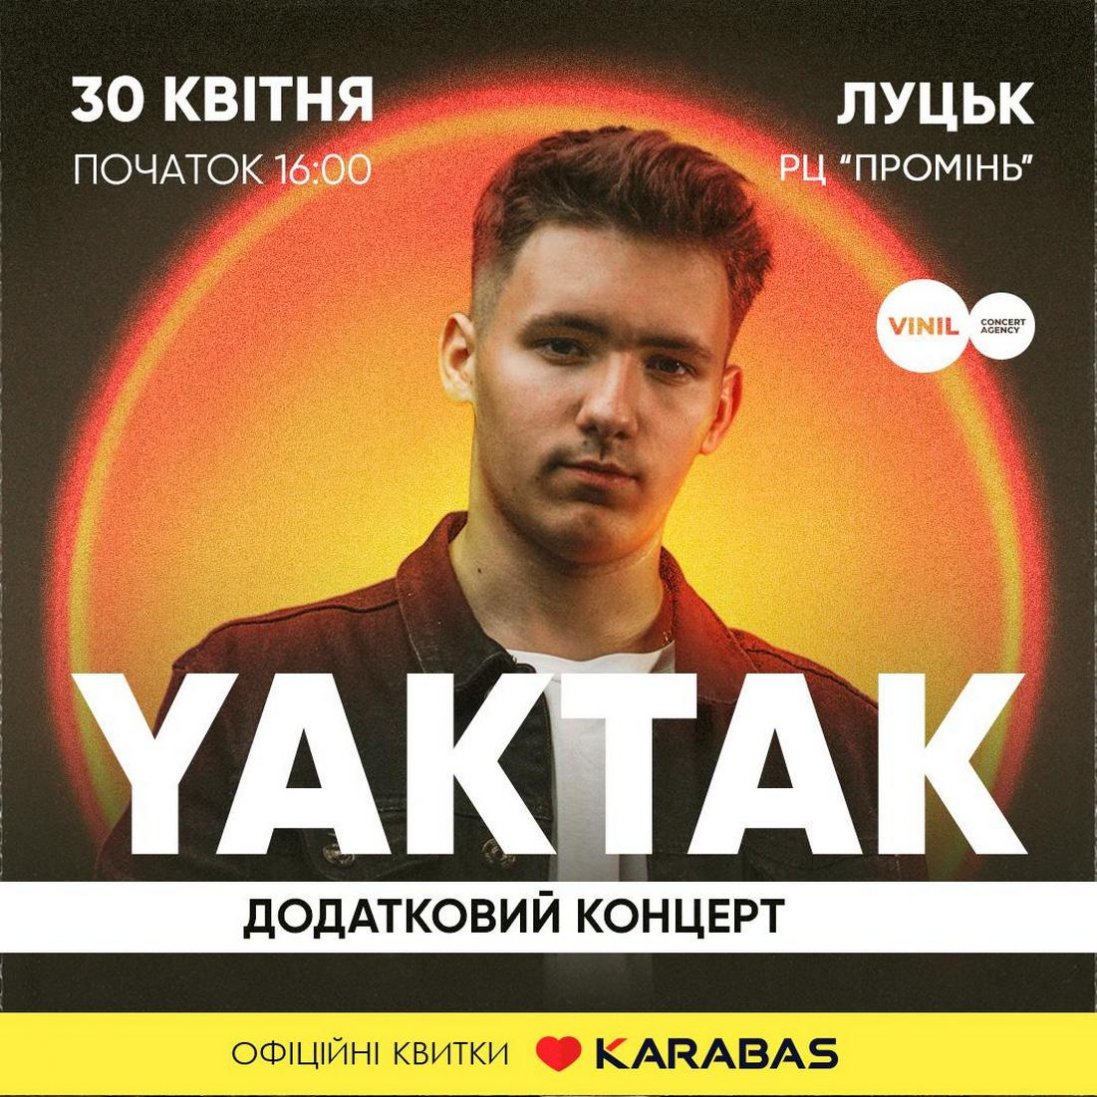 Перший великий сольний концерт YAKTAK у Луцьку: де і коли